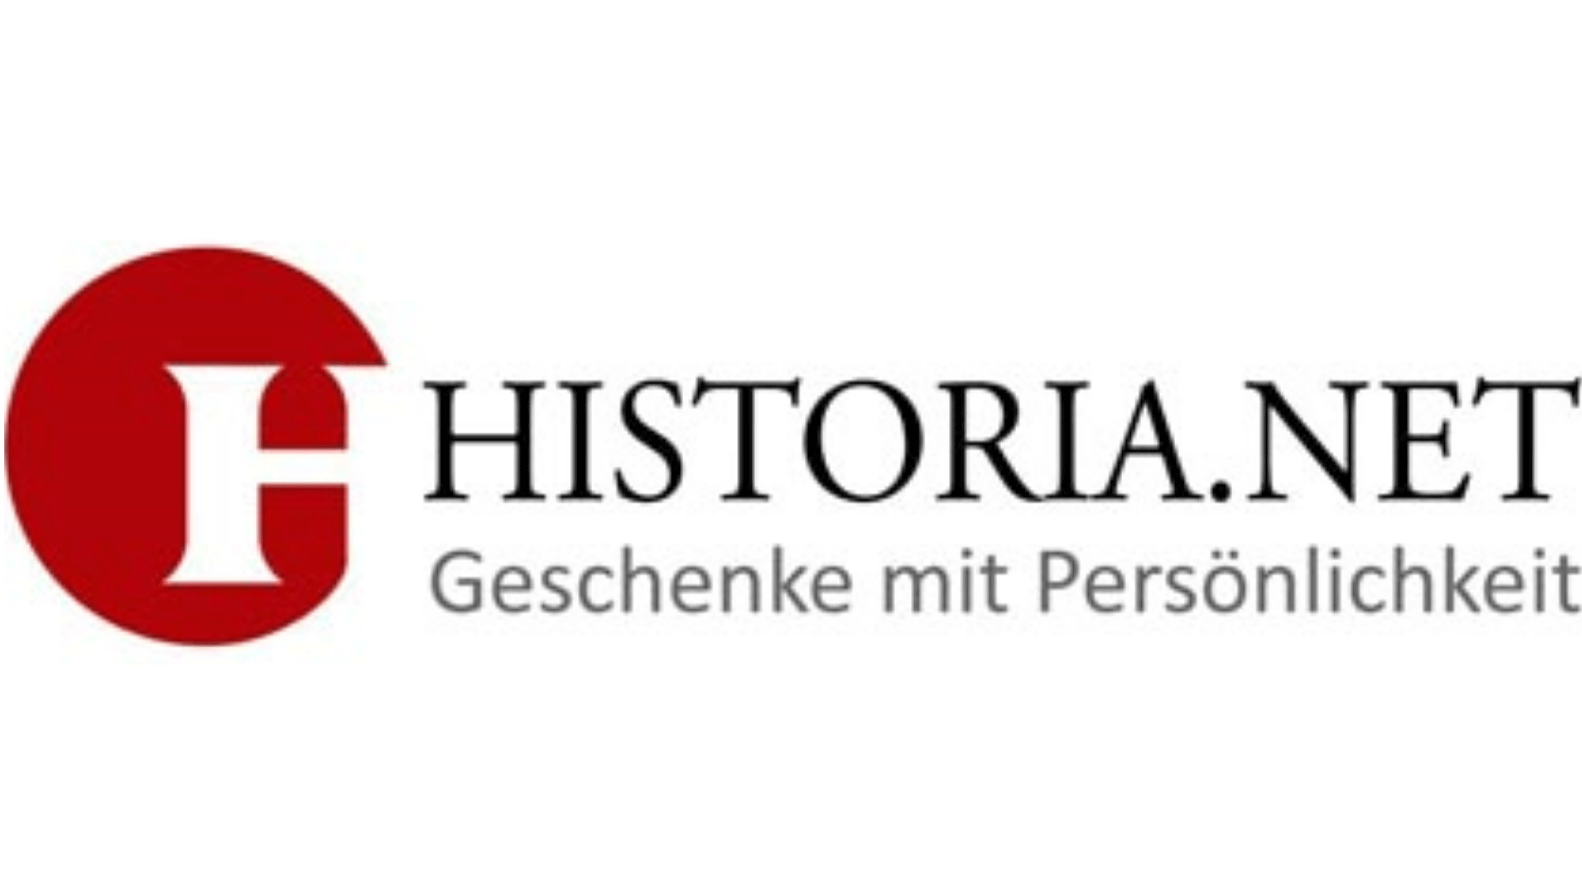 Historia.net: 5 Euro sparen mit Gutschein